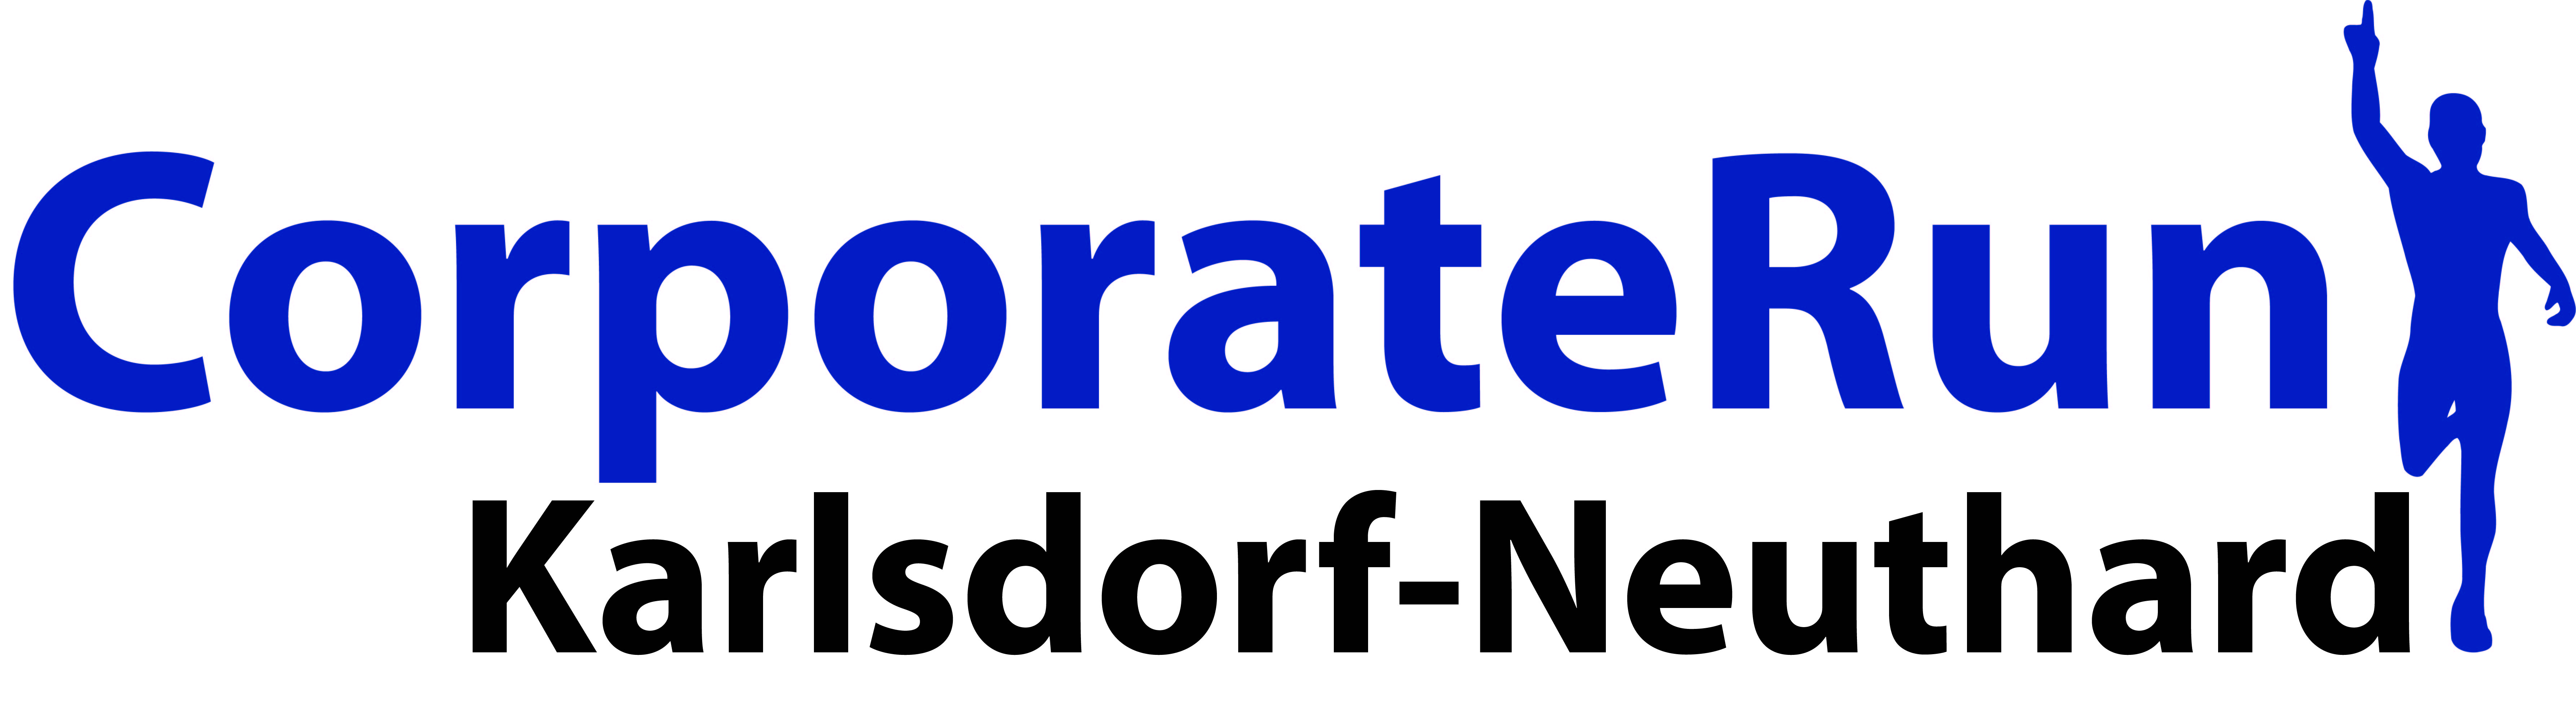 CorporateRun Karlsdorf-Neuthard